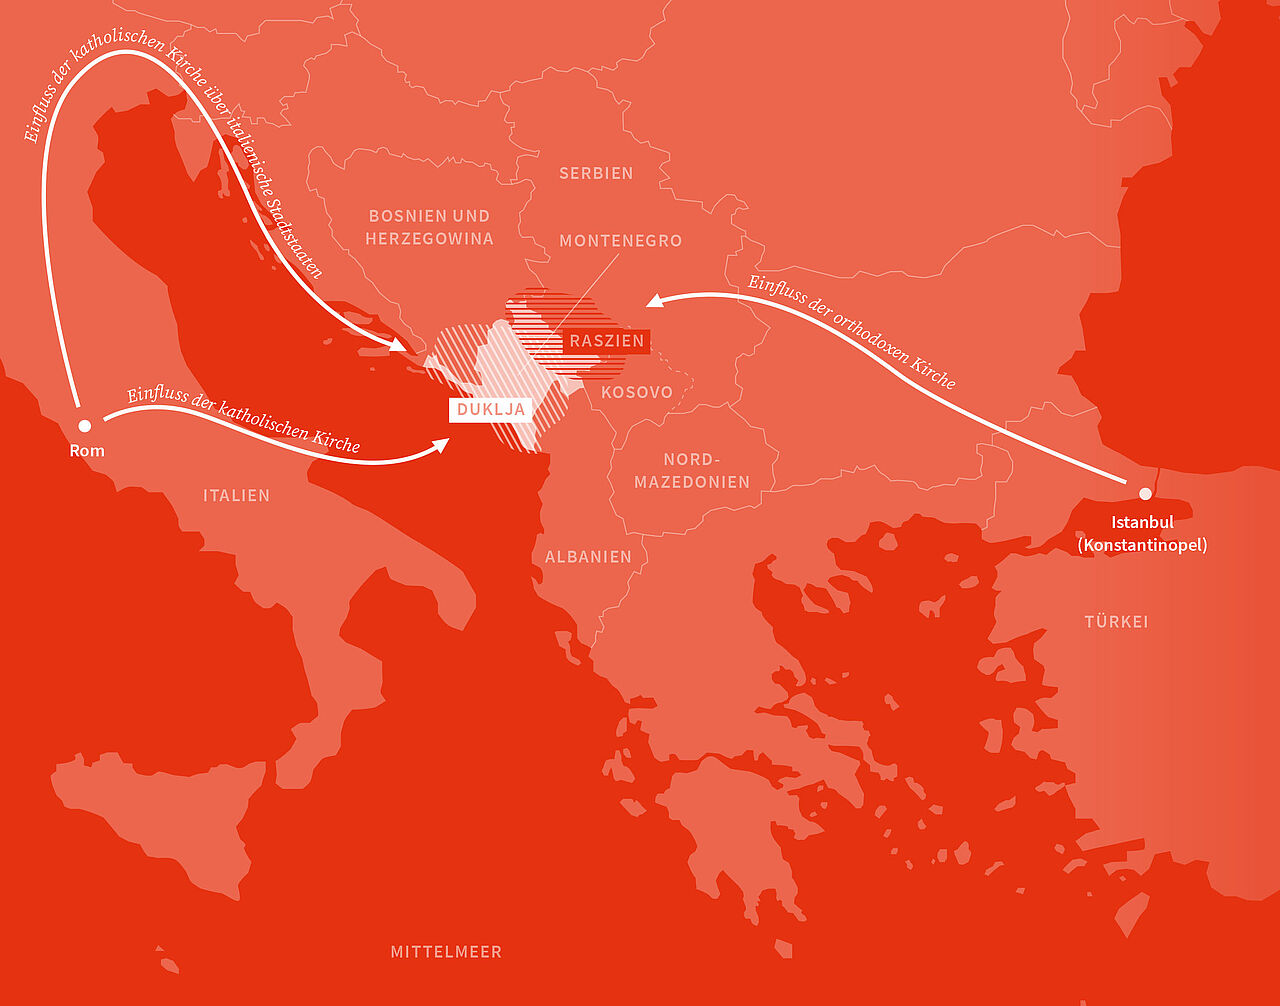 Die Karte zeigt einen rot eingefärbten Ausschnitt Europas zwischen Italien und der Türkei